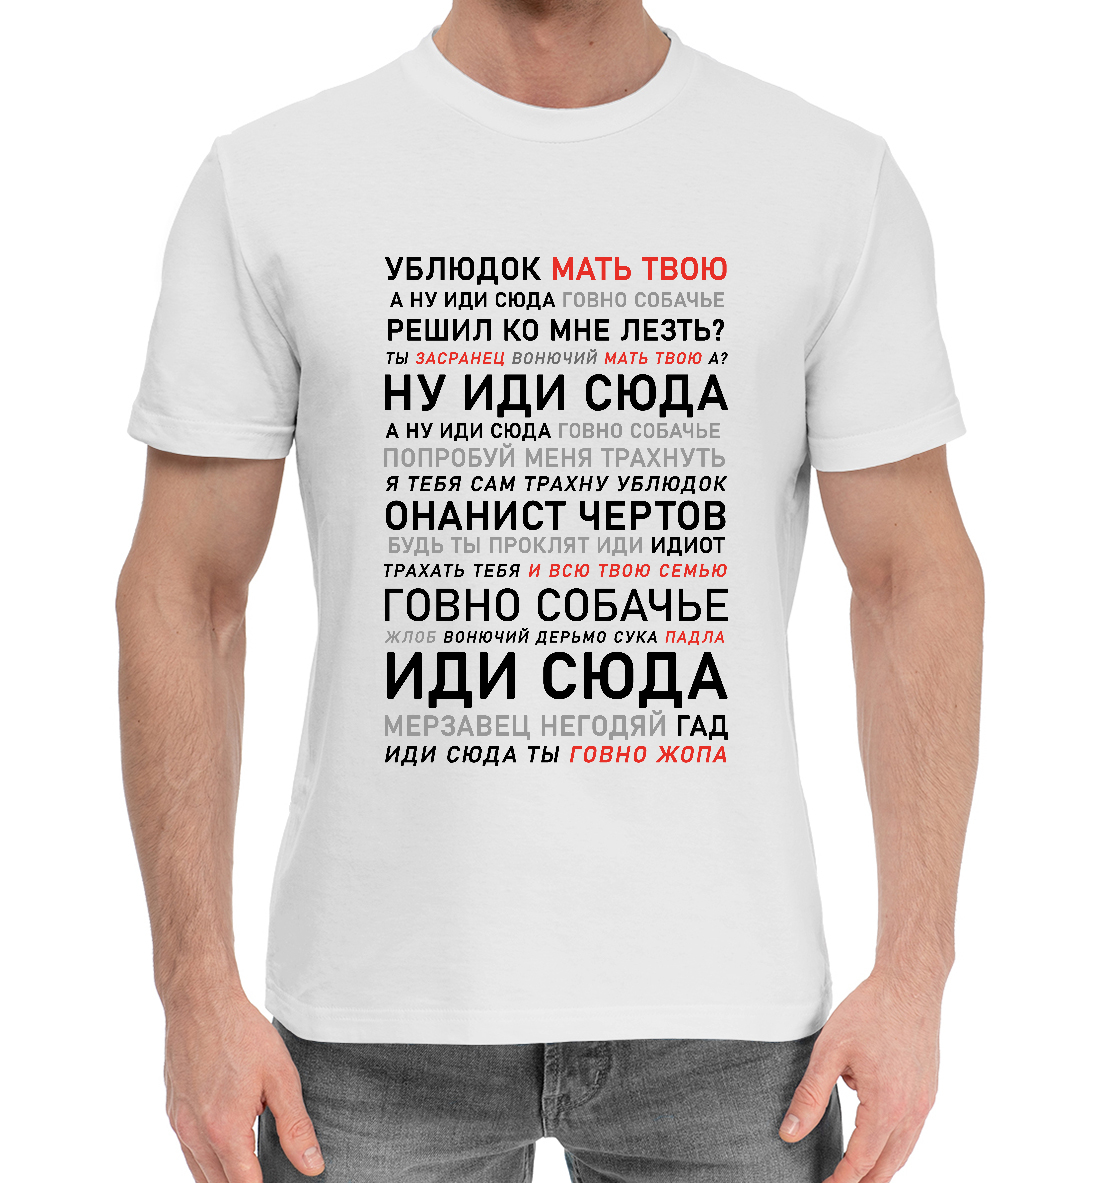 Мужская Хлопковая футболка с надписью Ублюдок, мать твою, артикул MEM-560553-hfu-2mp